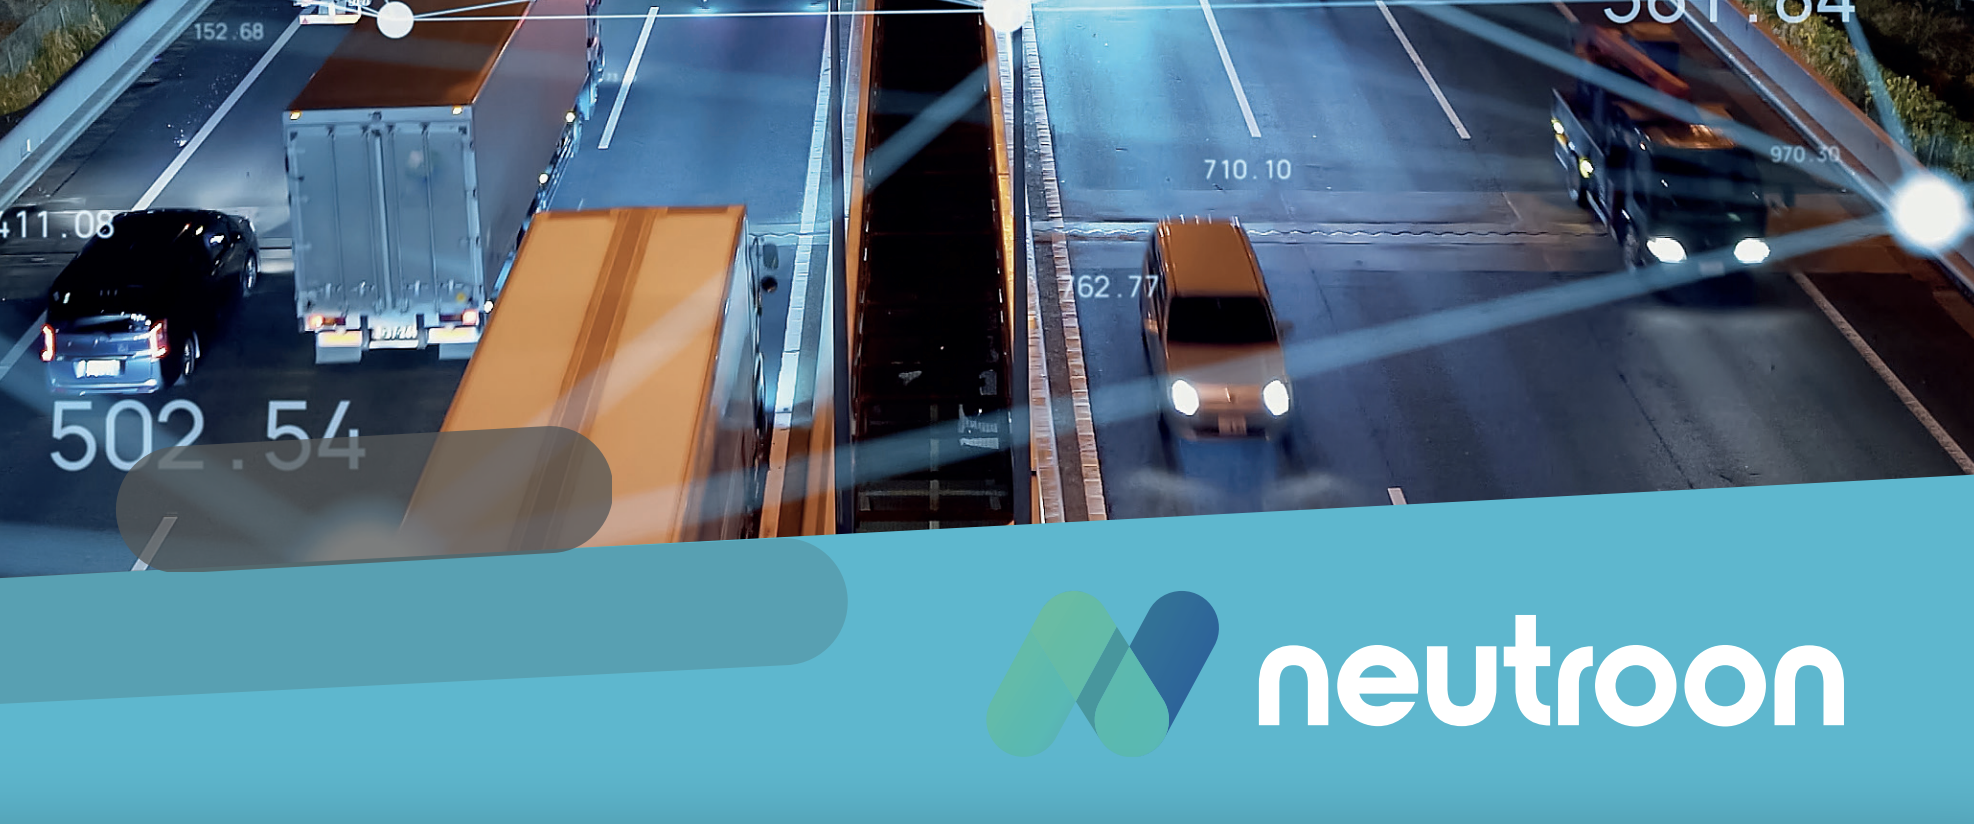 Neutroon, la innovadora empresa que revoluciona las redes privadas 5G con la potencia de AWS y la colaboración de Ausum Cloud.